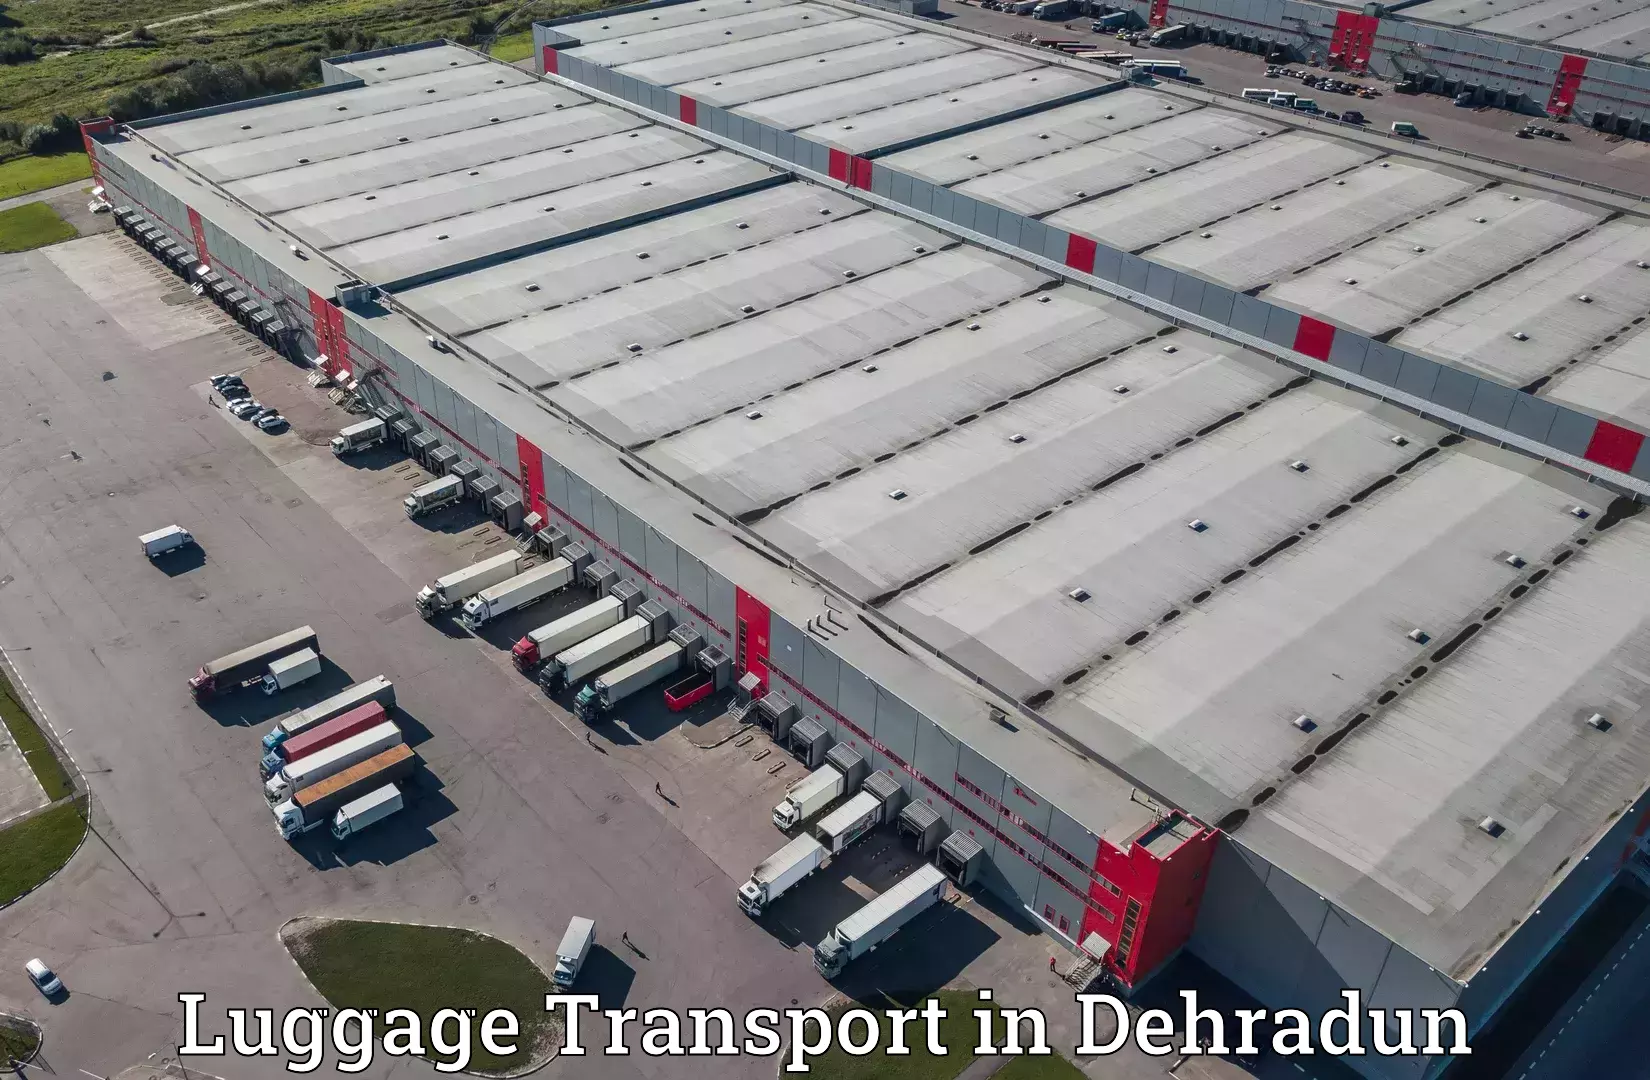 Hassle-free luggage shipping in Dehradun